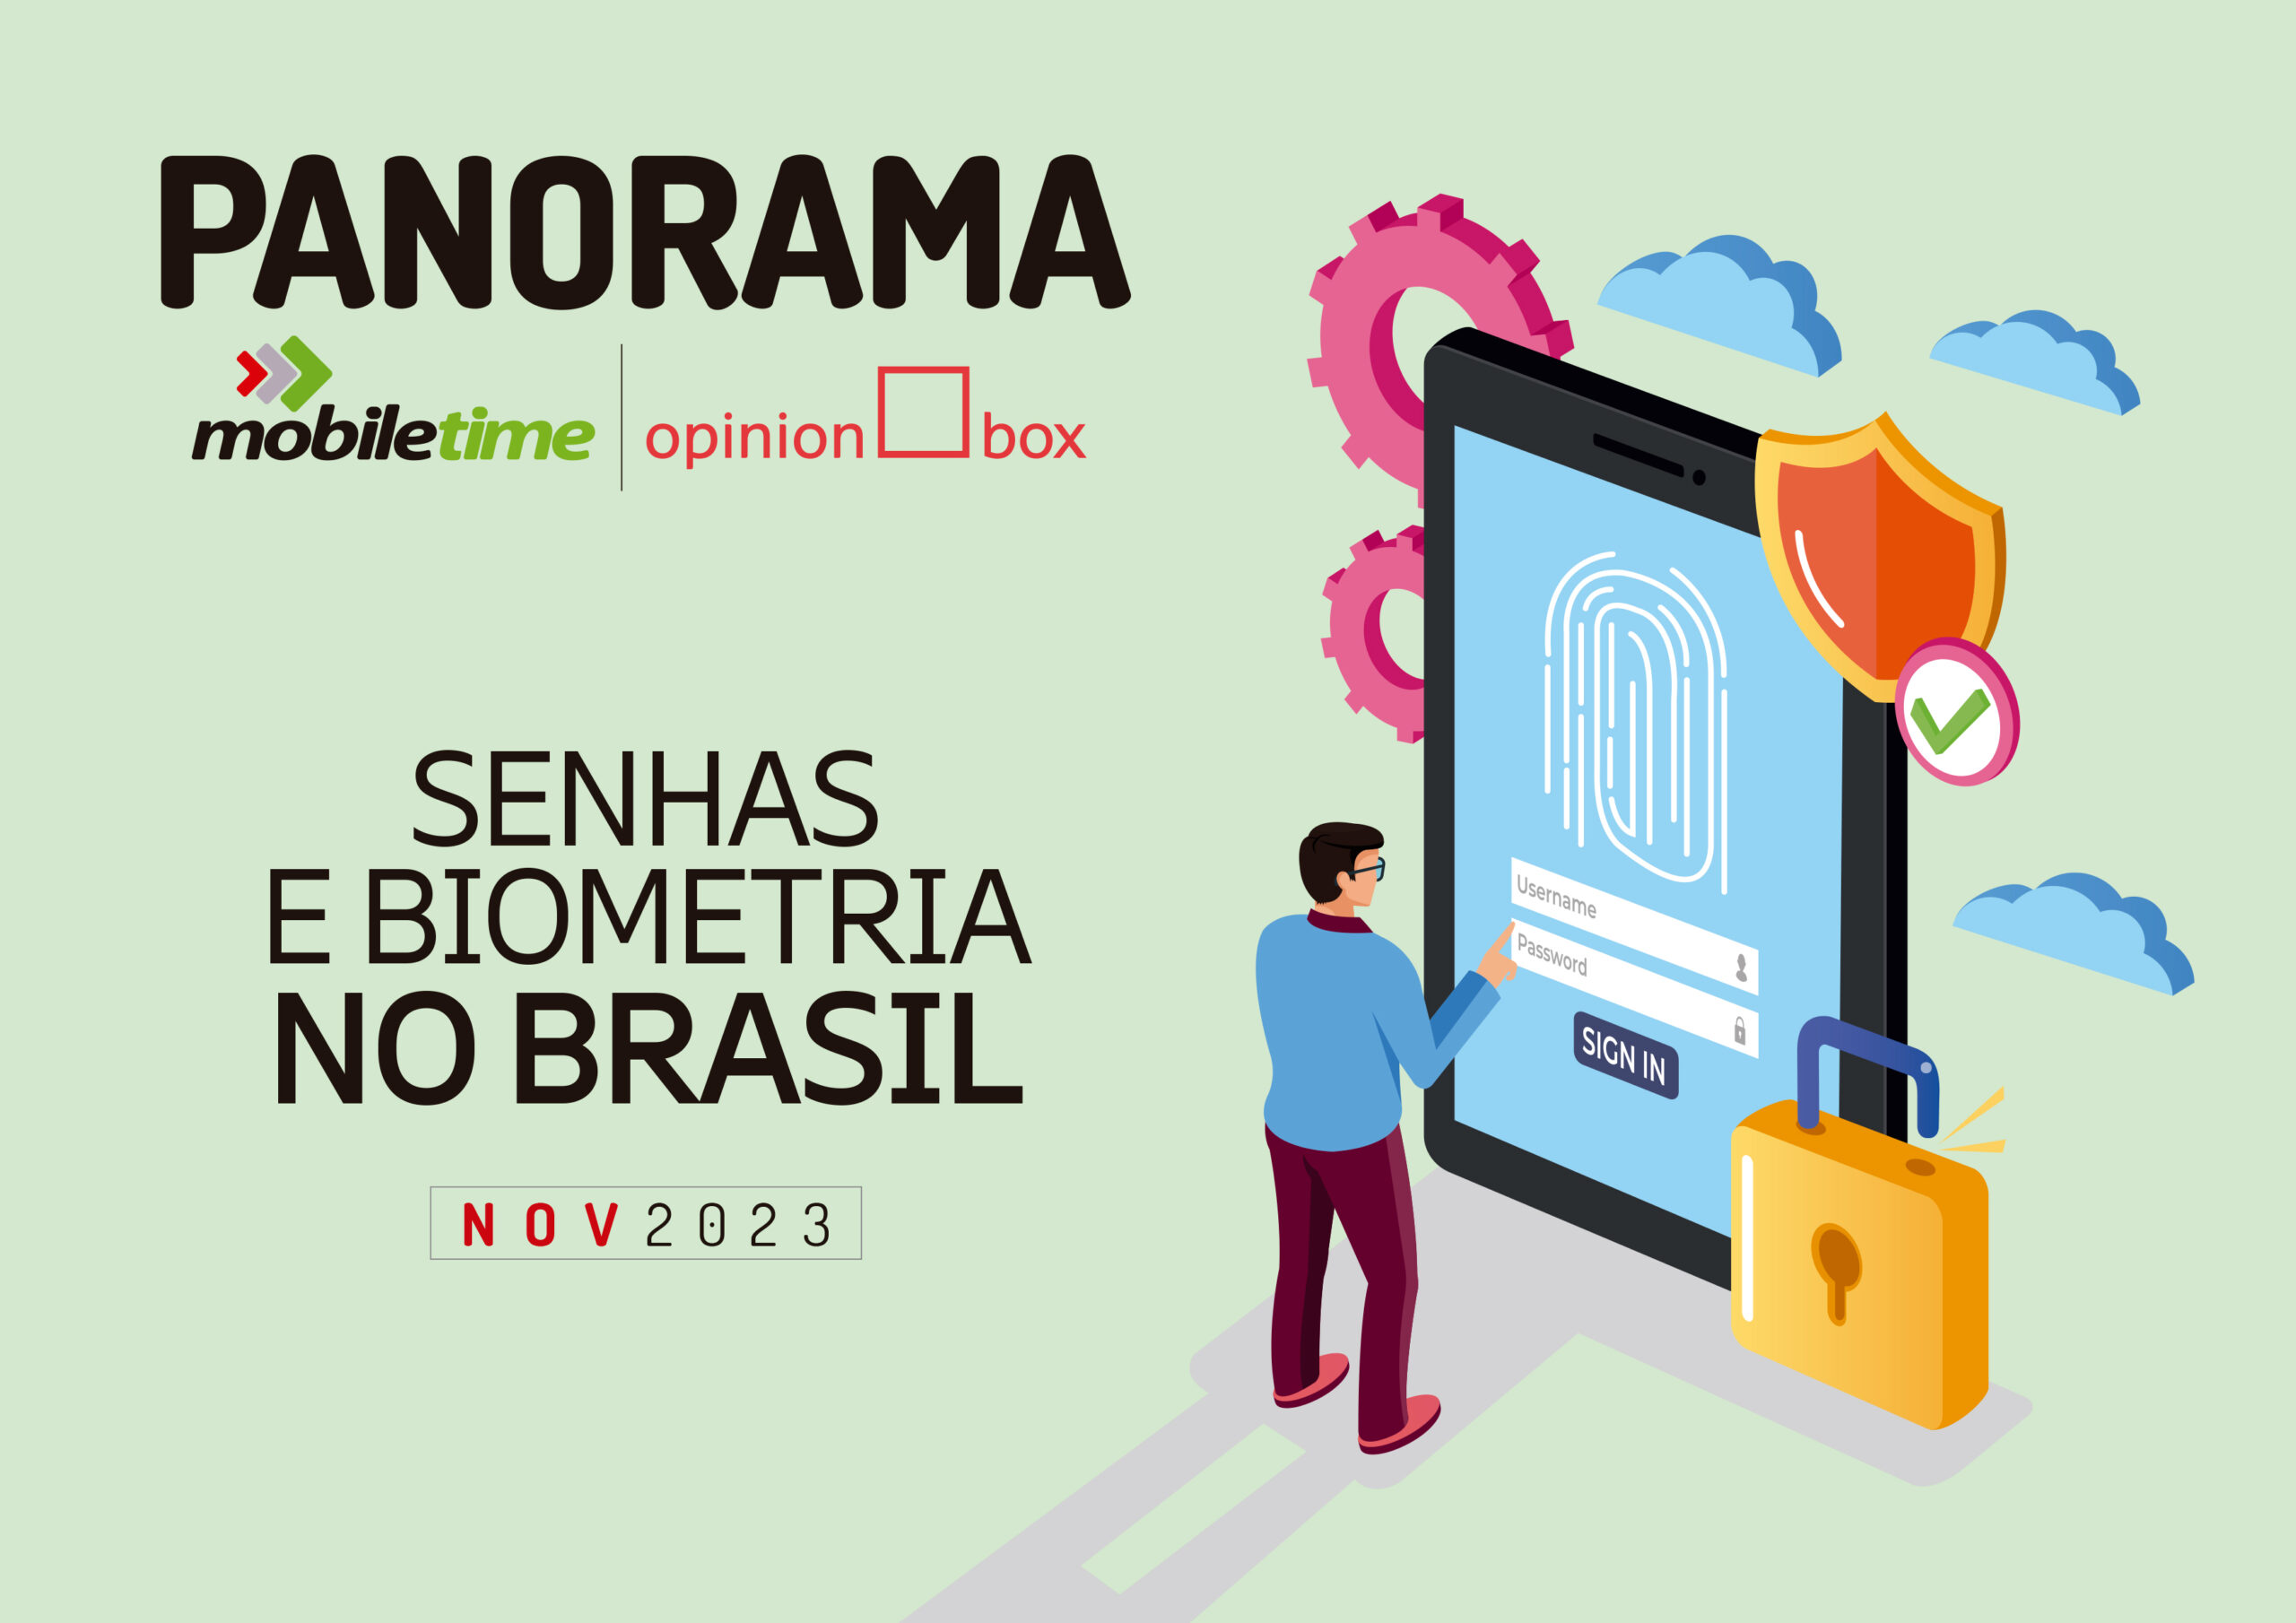 Uso de apps no Brasil - Dez 22